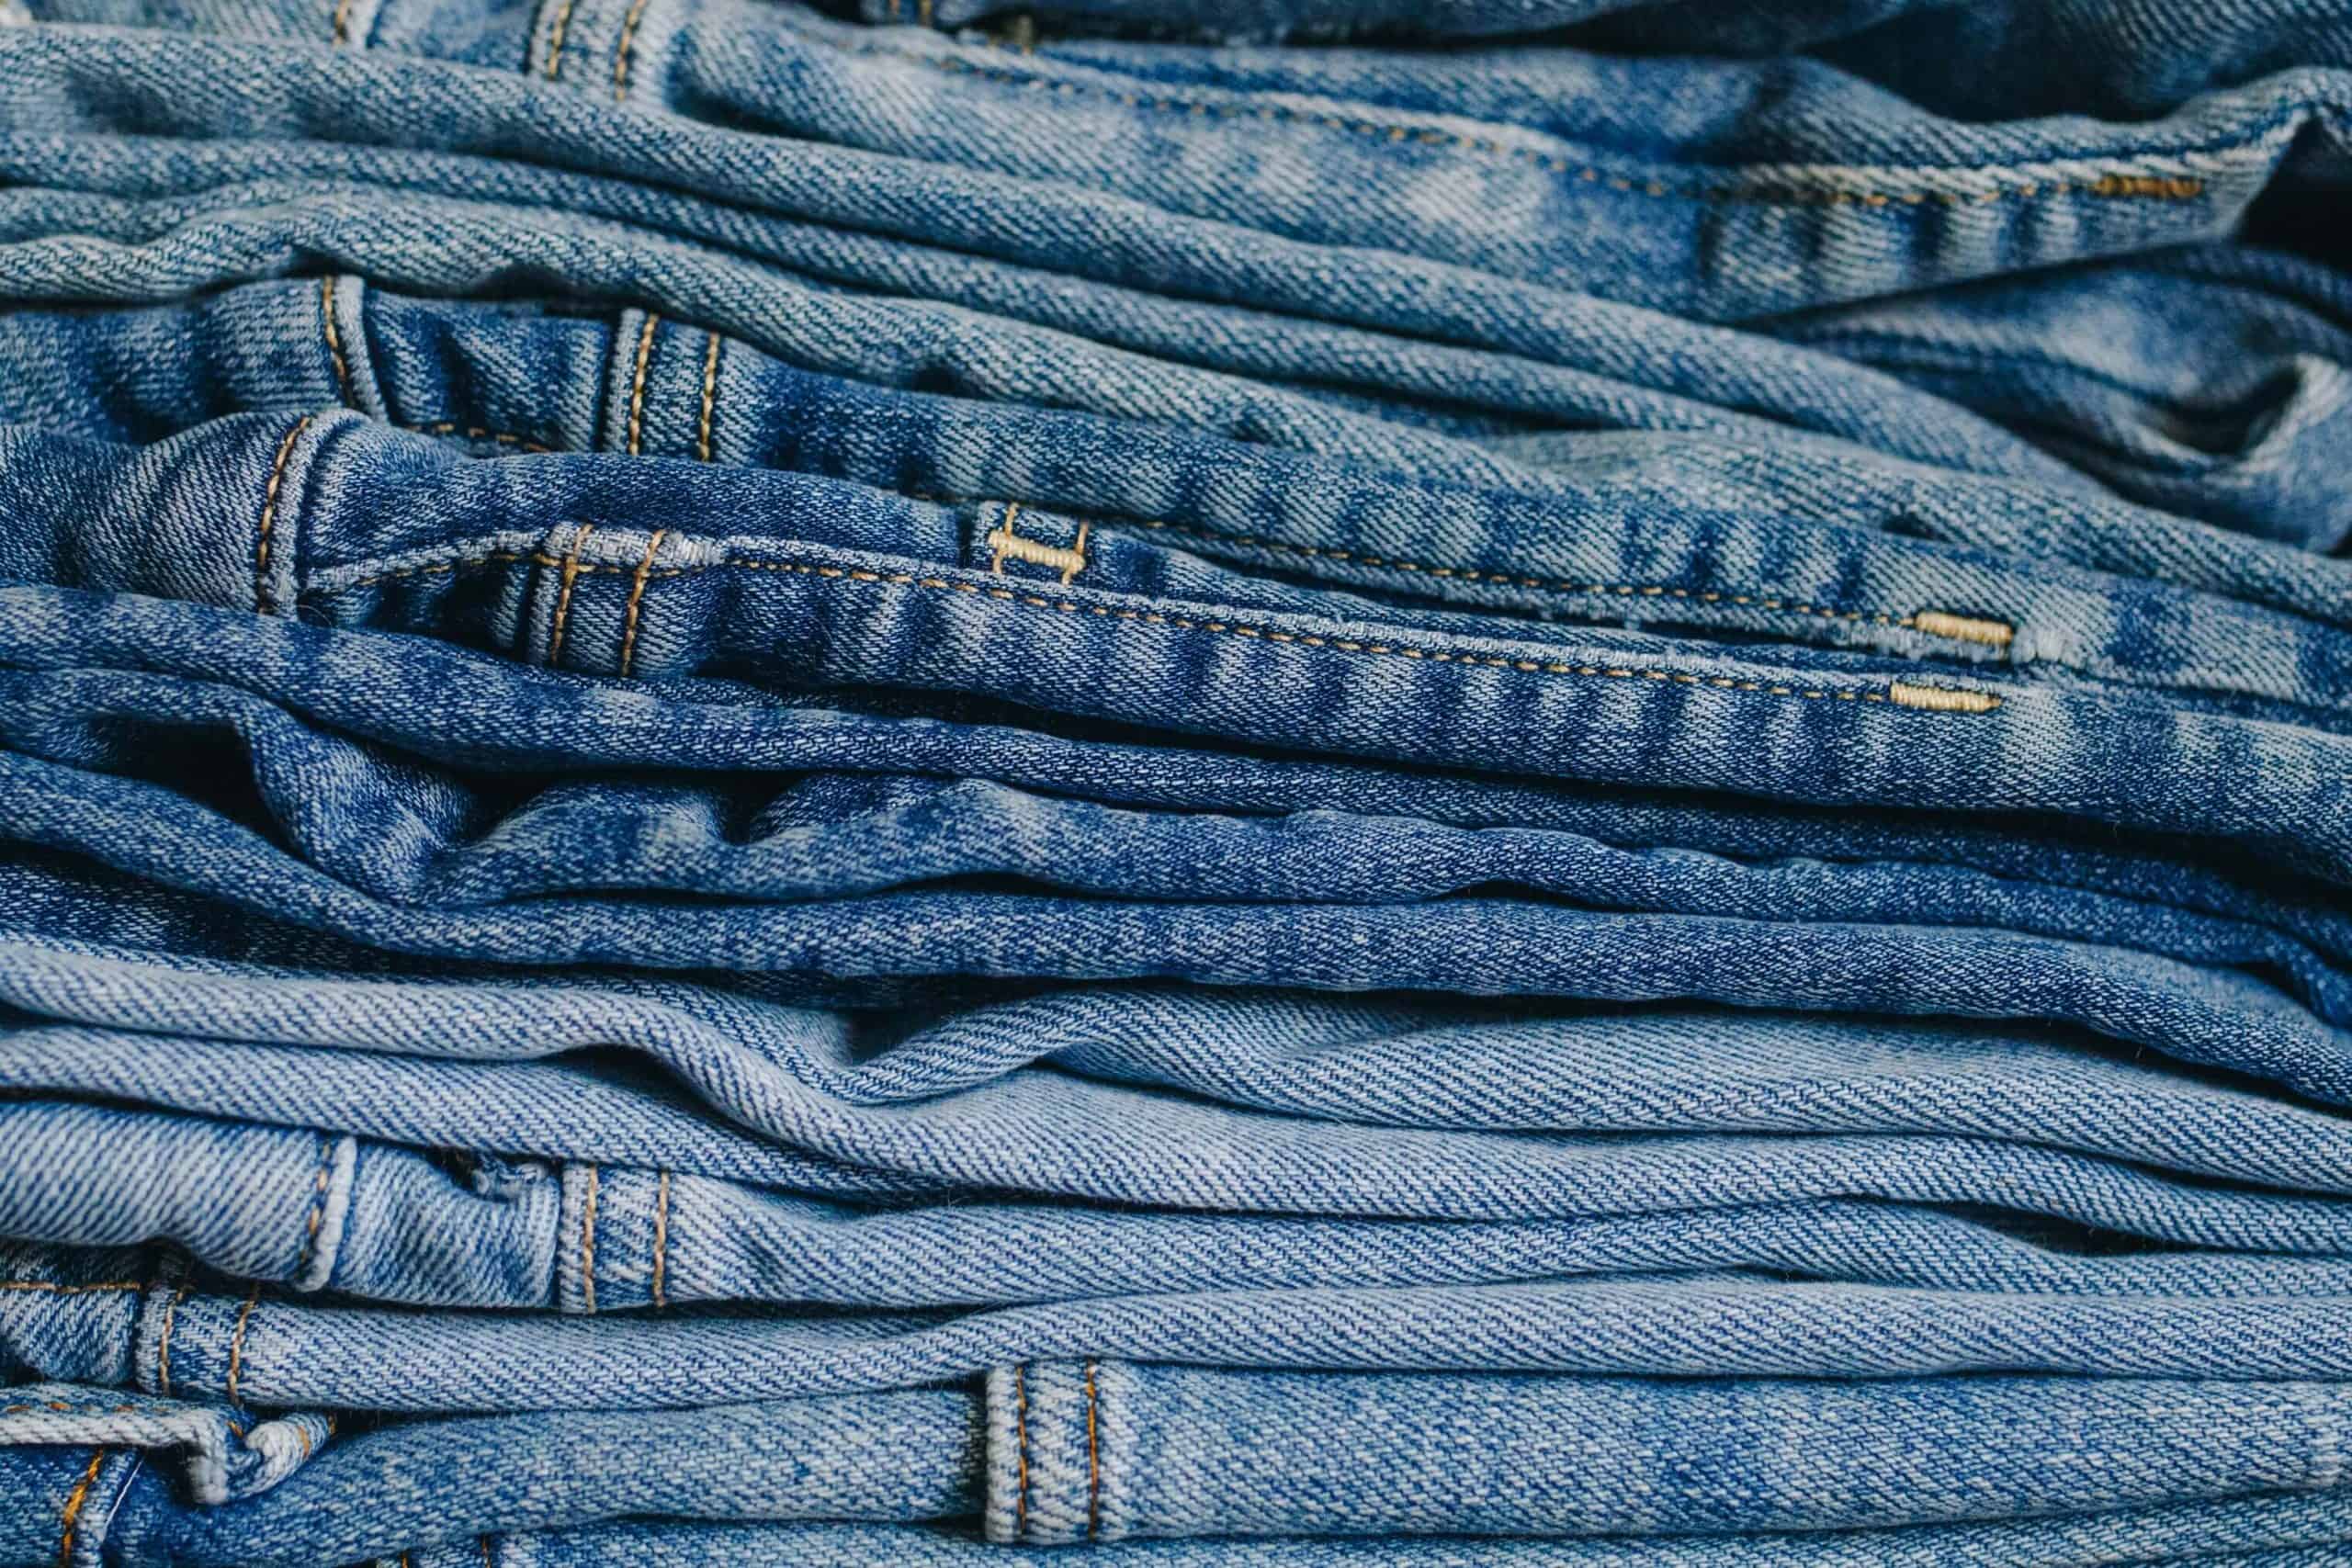  quần jeans đã gây bão trong ngành công nghiệp thời trang